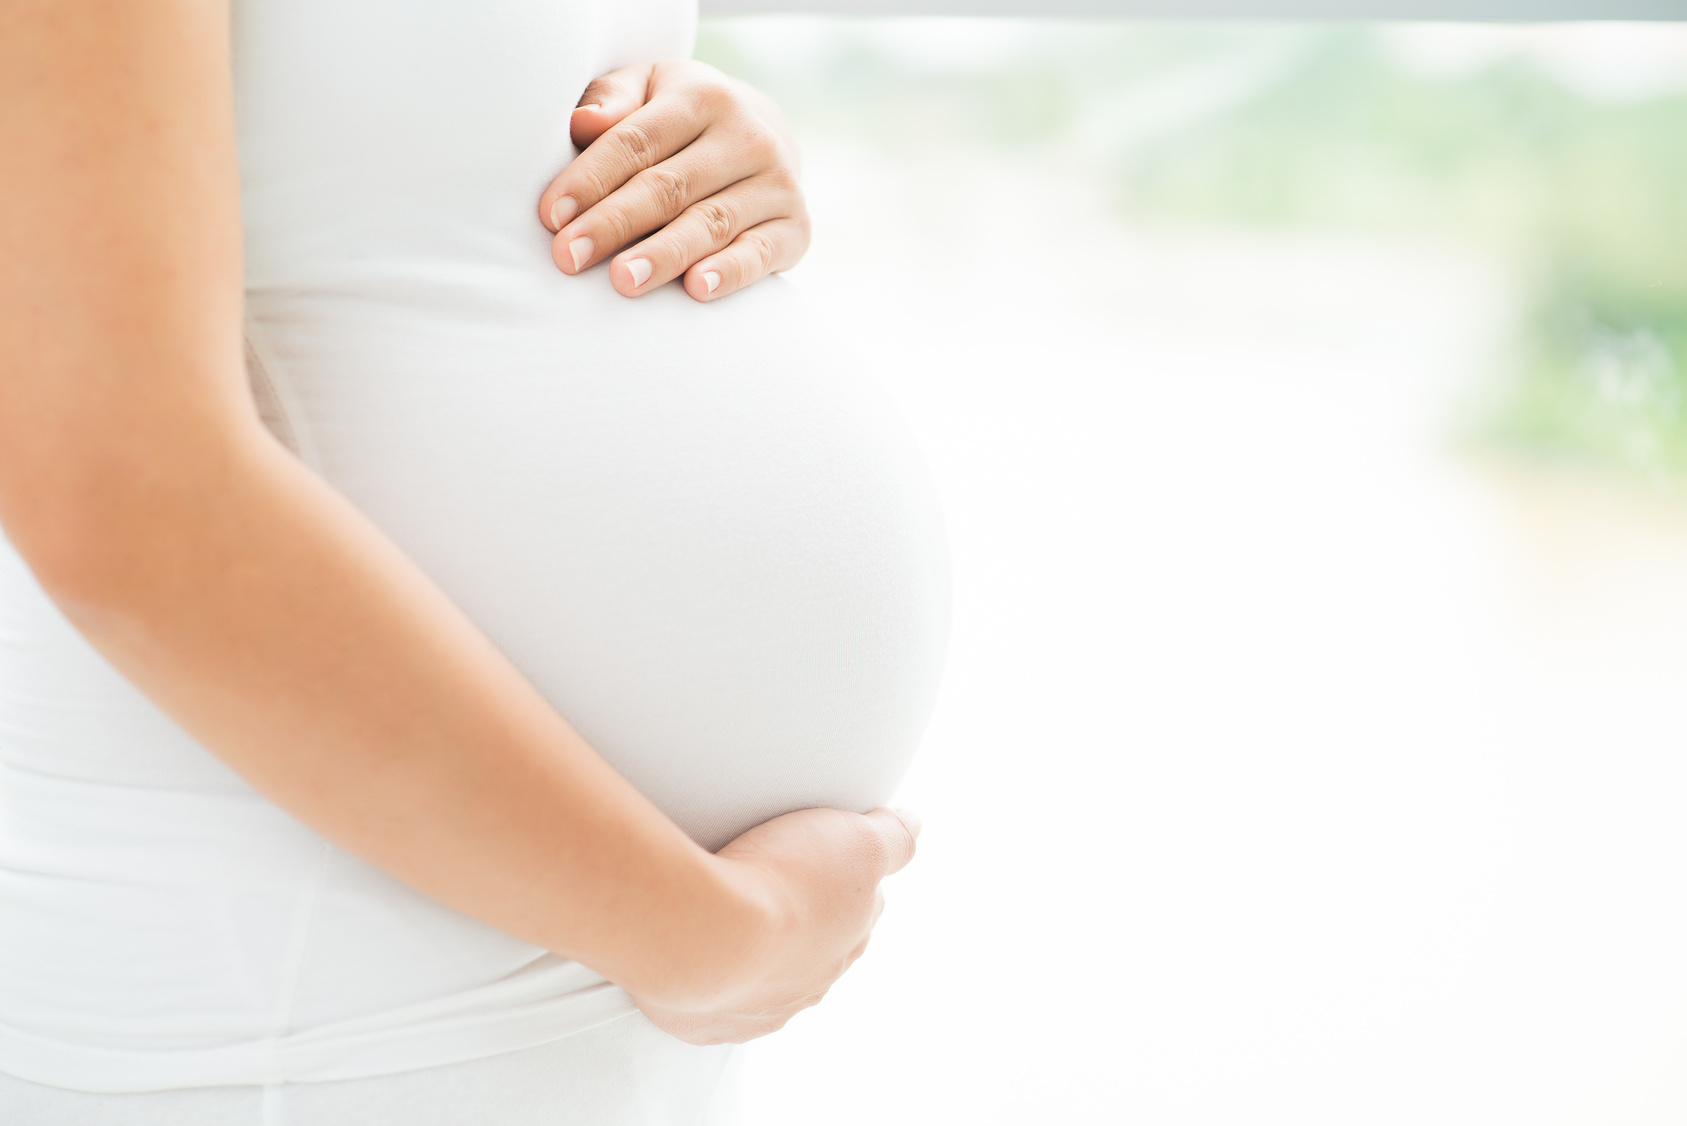 Quirónsalud Málaga incorpora un avanzado incubador de embriones que aumenta la posibilidad de embarazo